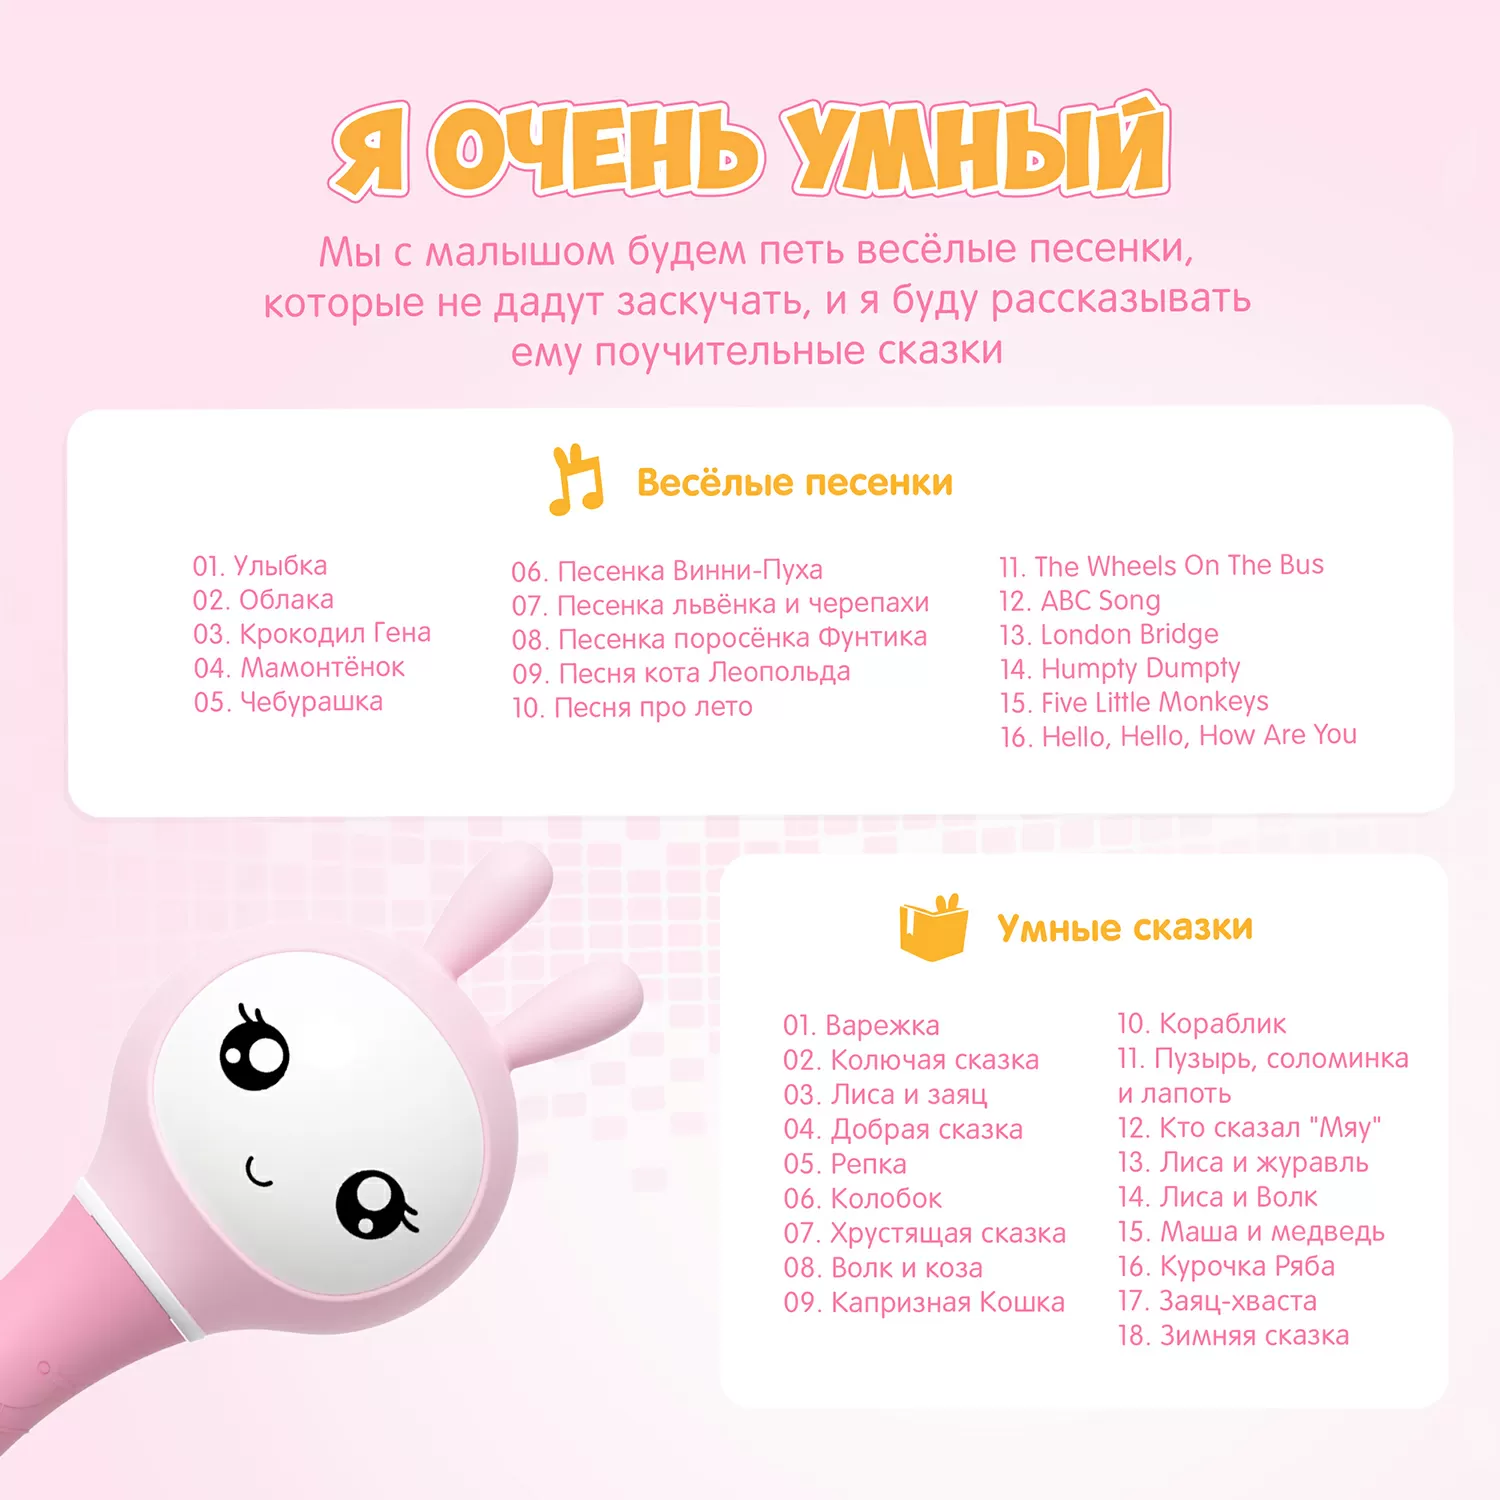 Музыкальная игрушка Умный зайка (розовый)